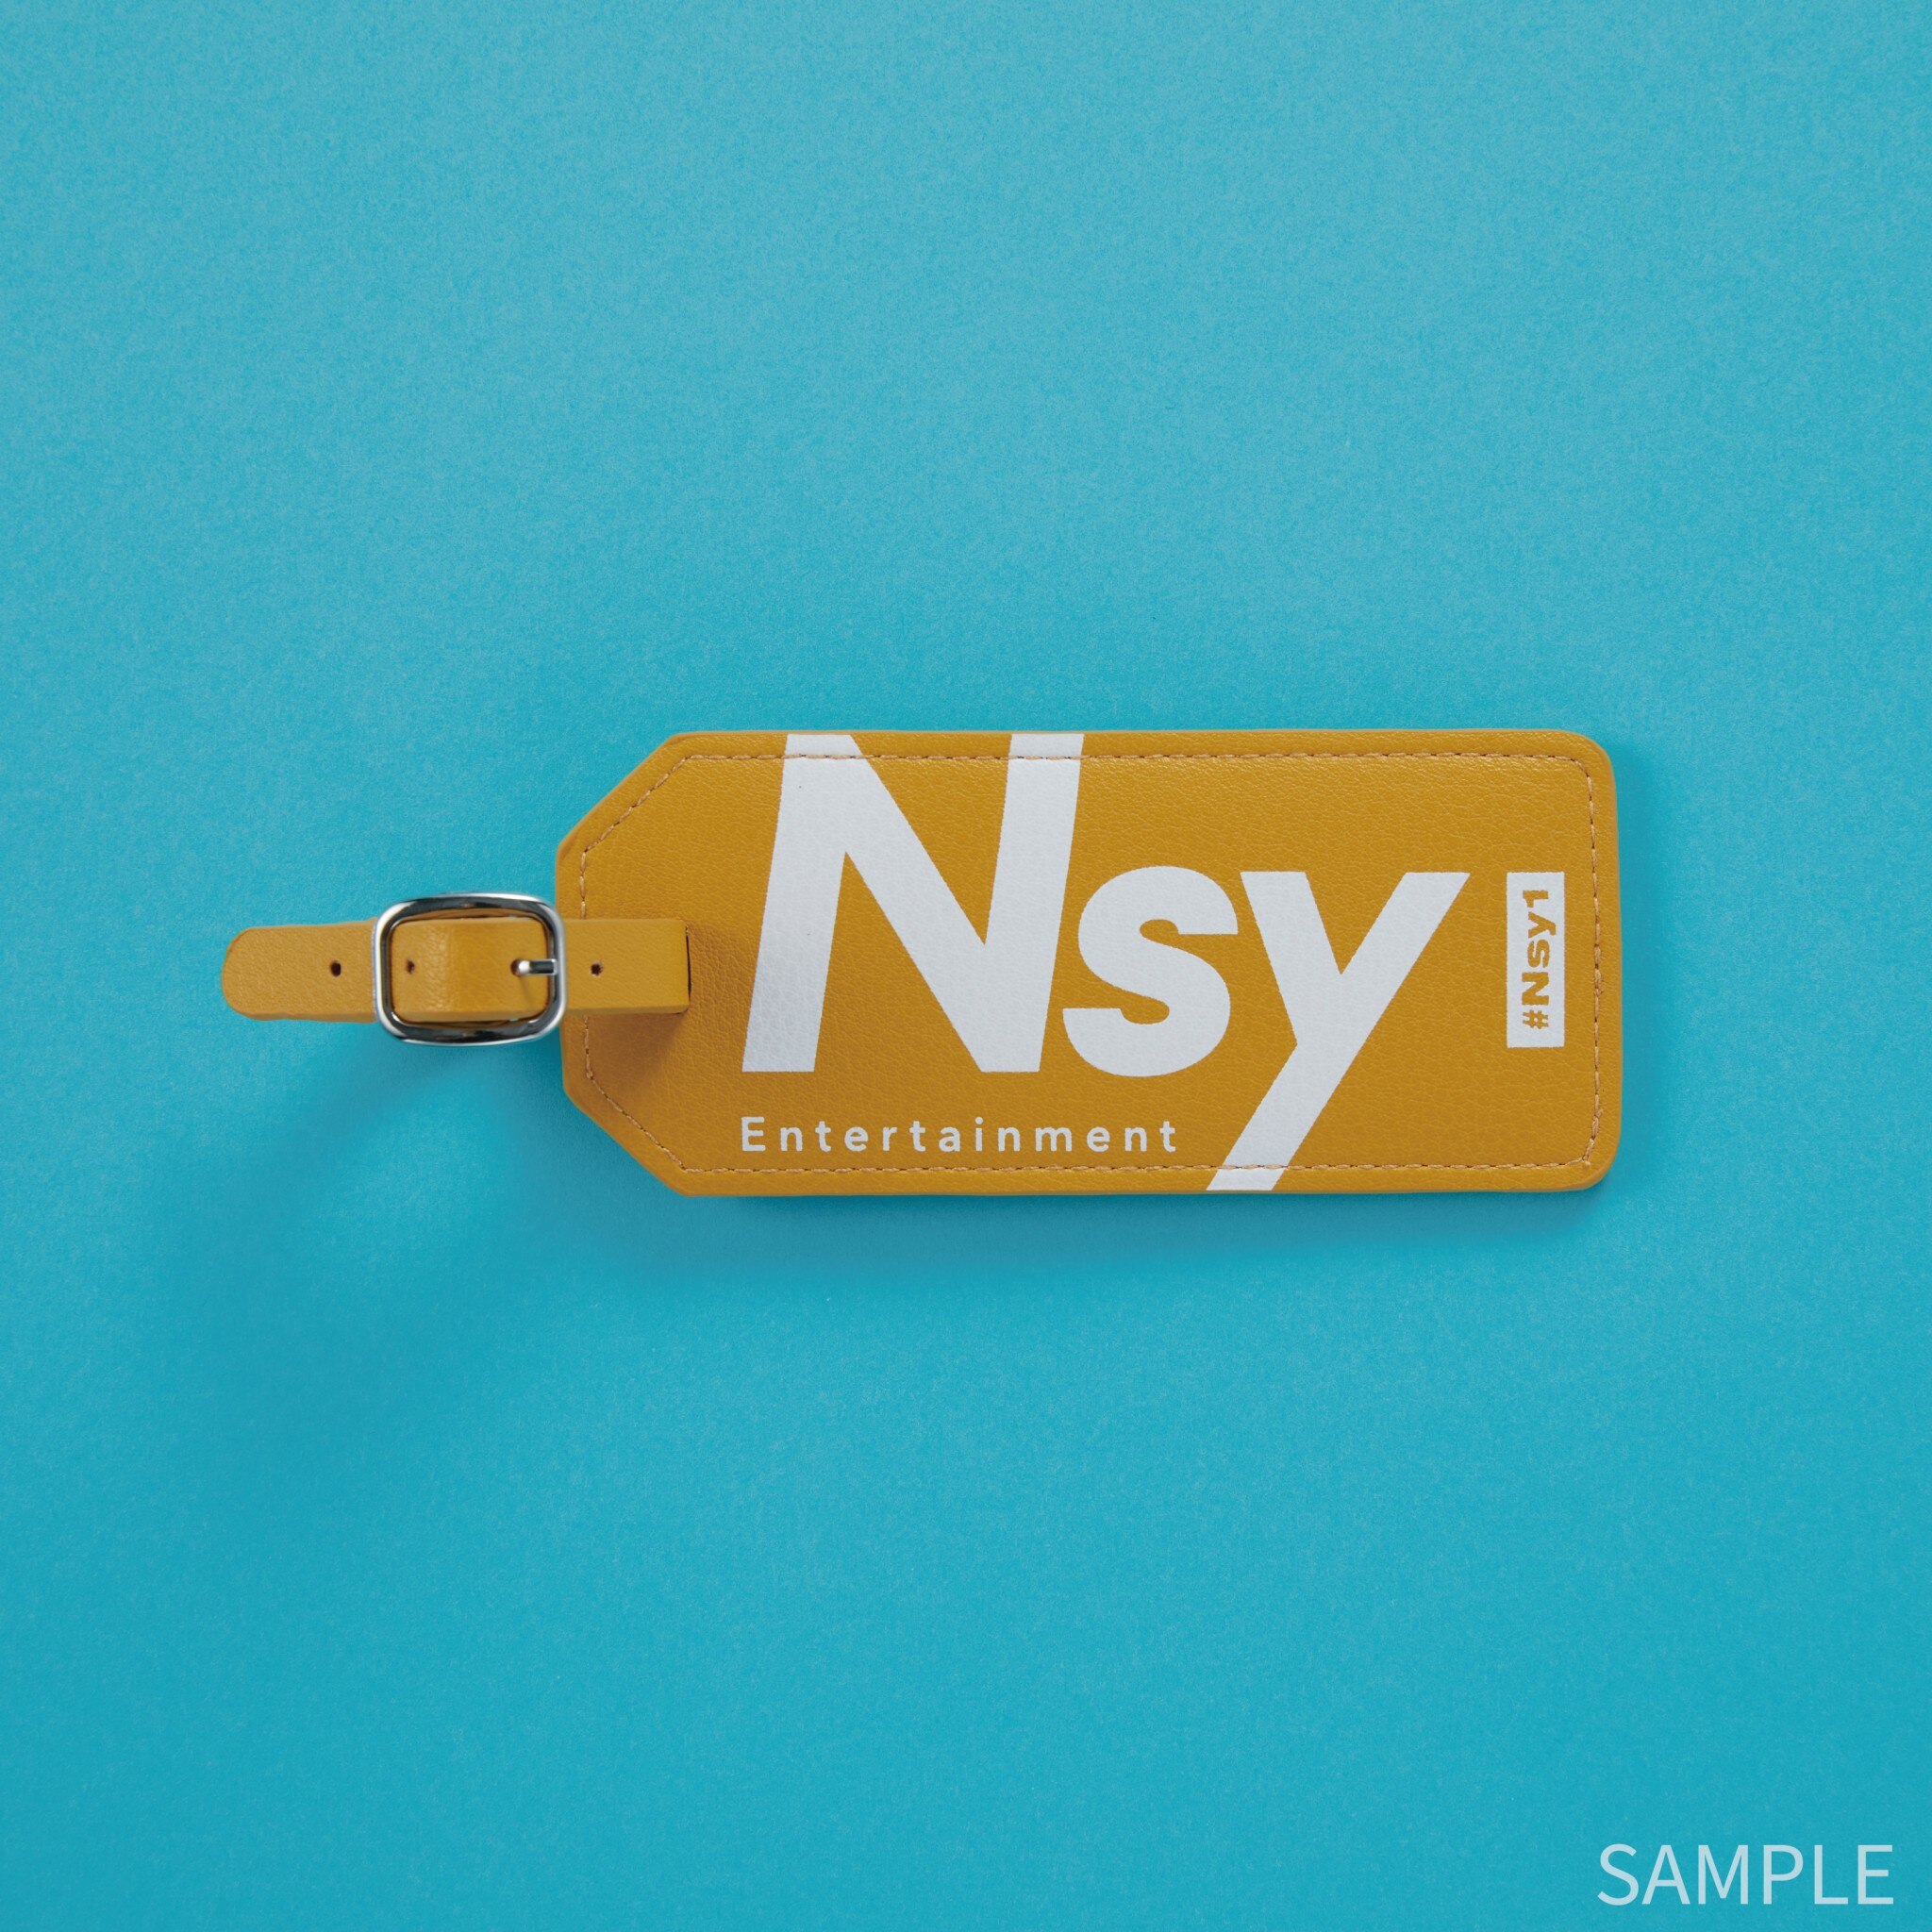 Nissy #Nsy1